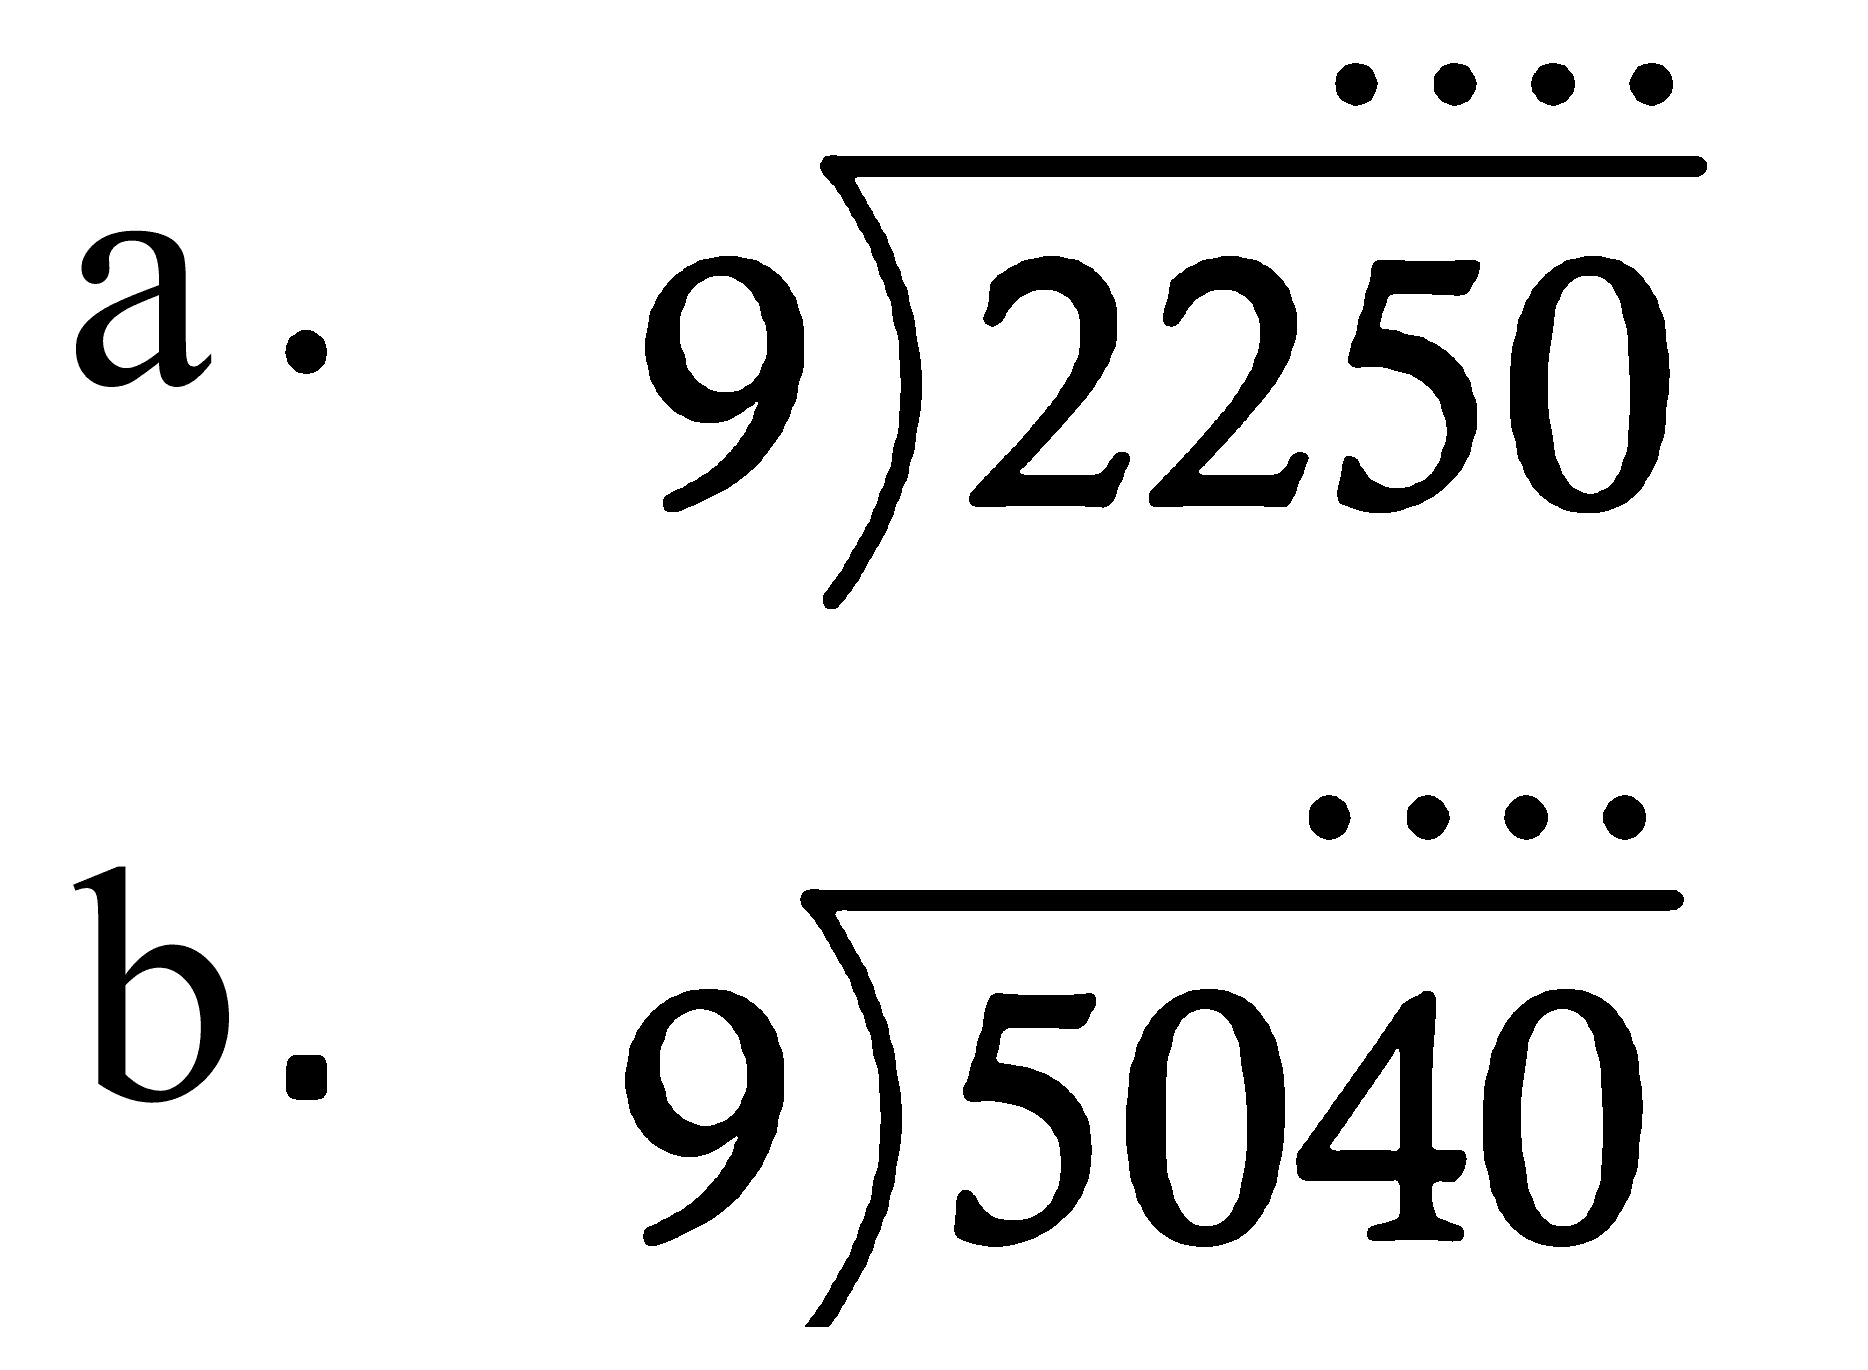 a. 2250 : 9 
b. 5040 : 9 